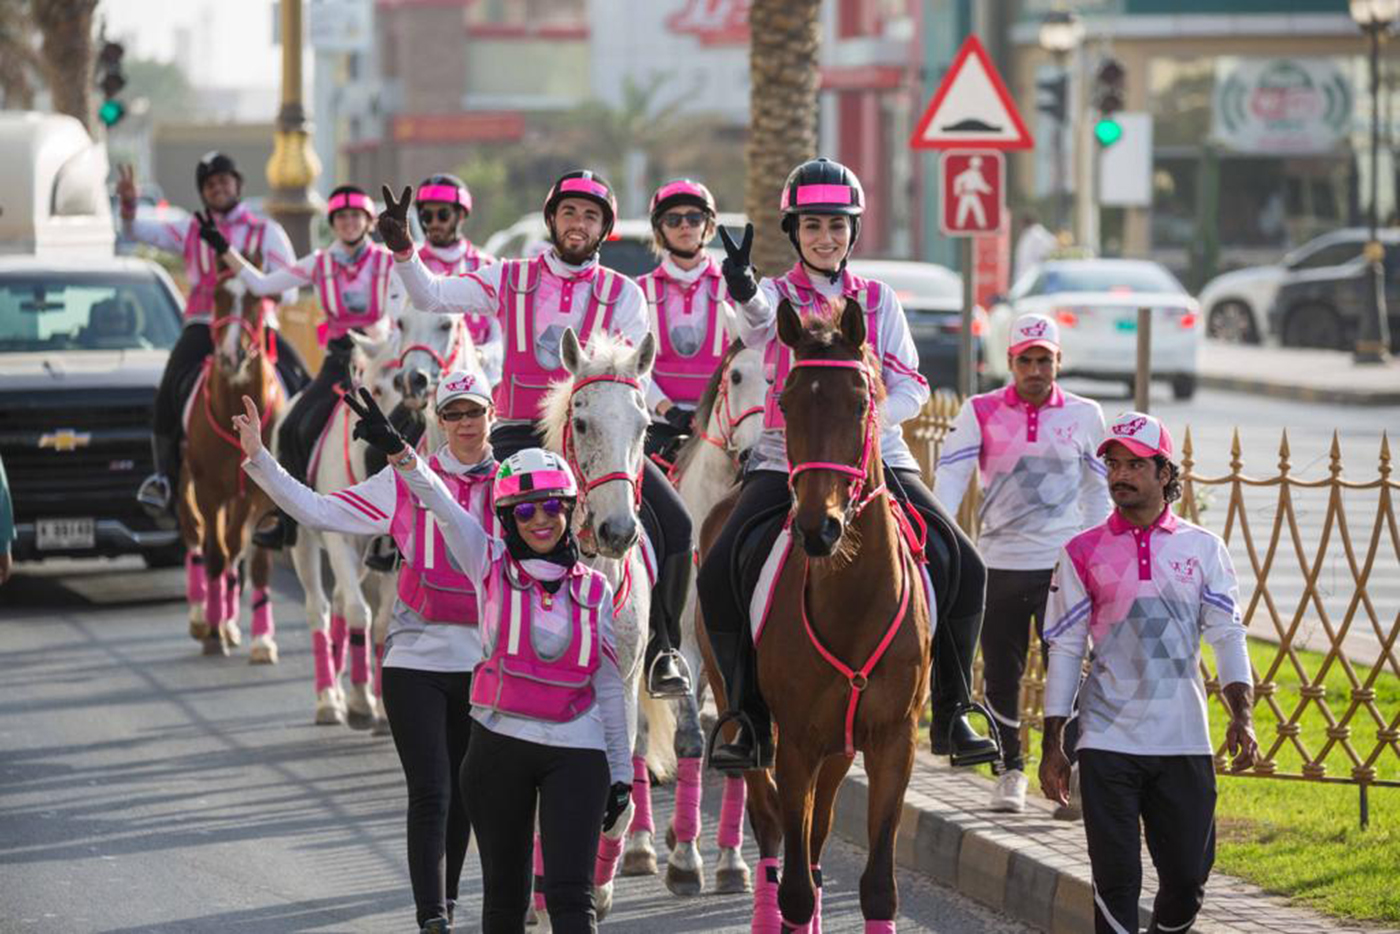 "القافلة الوردية" تدعو فرسان العطاء للمشاركة بمسيرة اليوبيل البرونزي